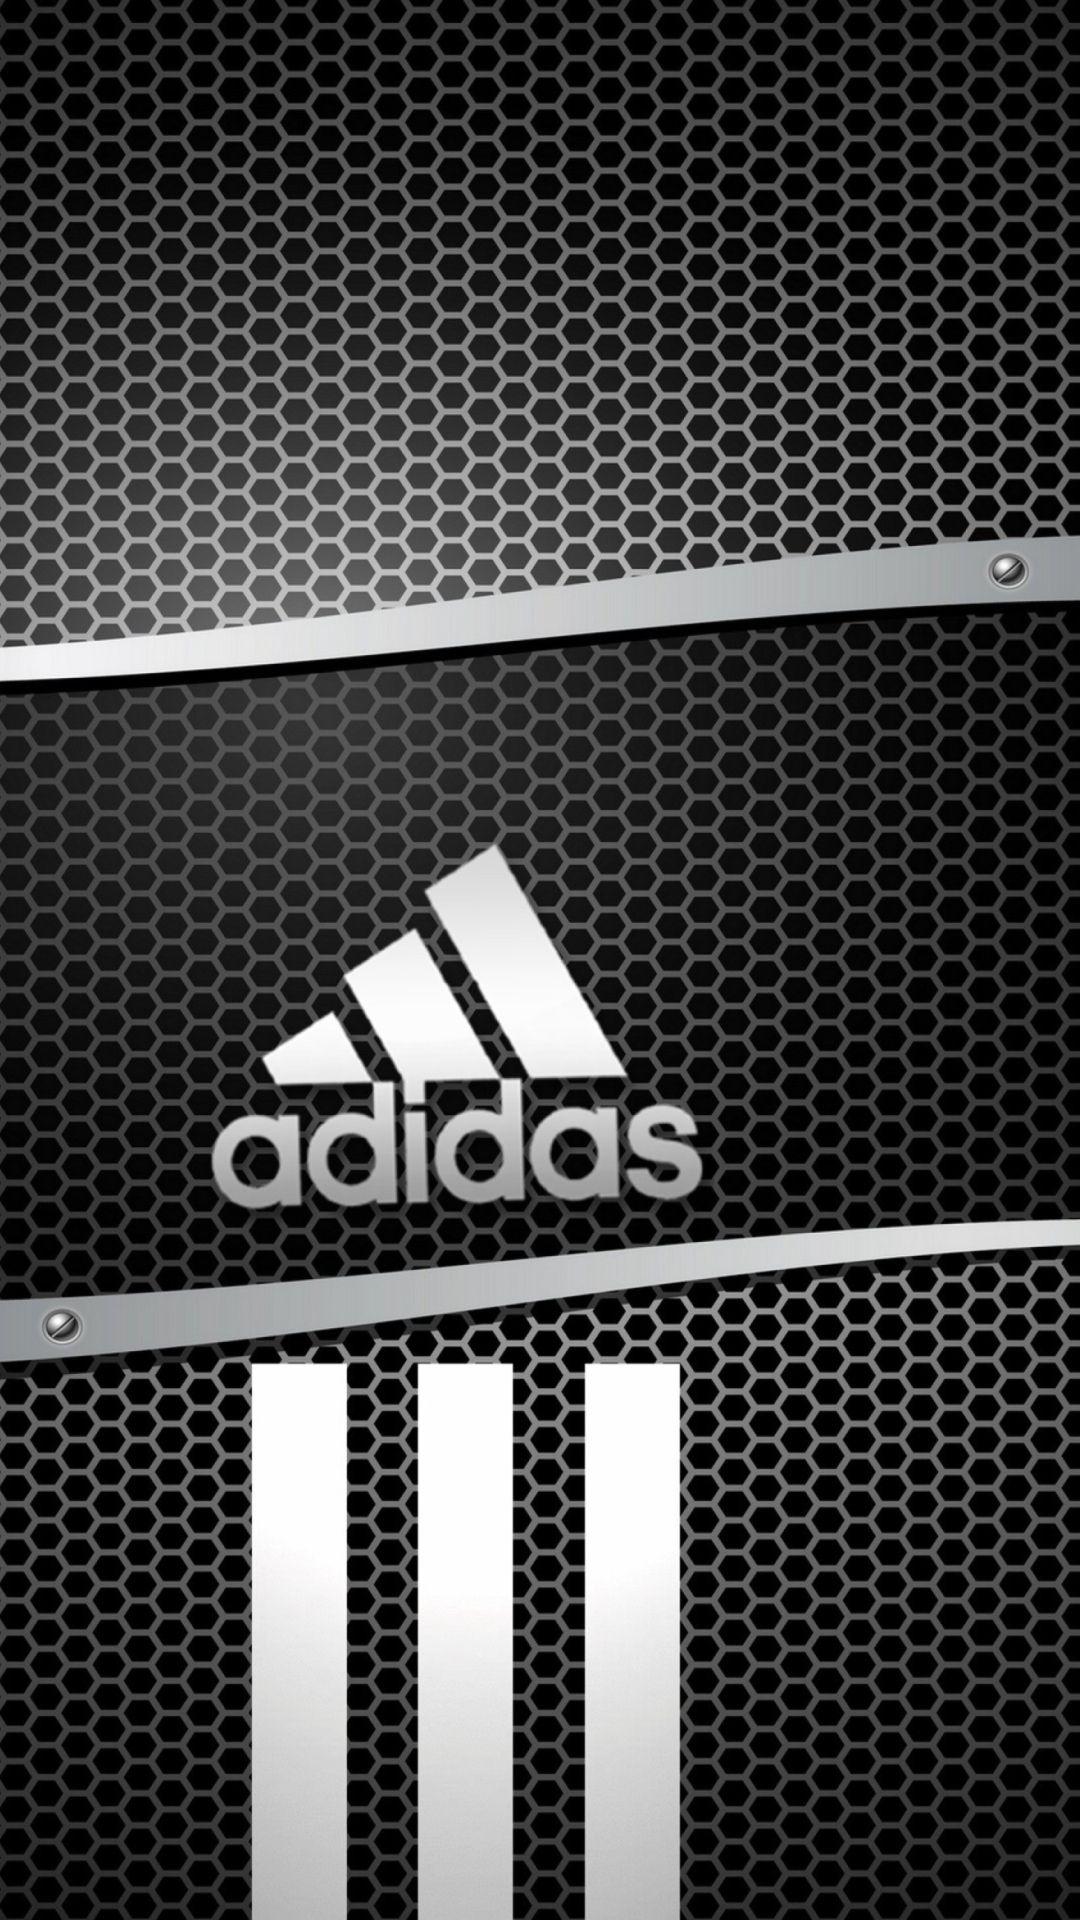 49 Adidas iPhone Wallpaper  WallpaperSafari